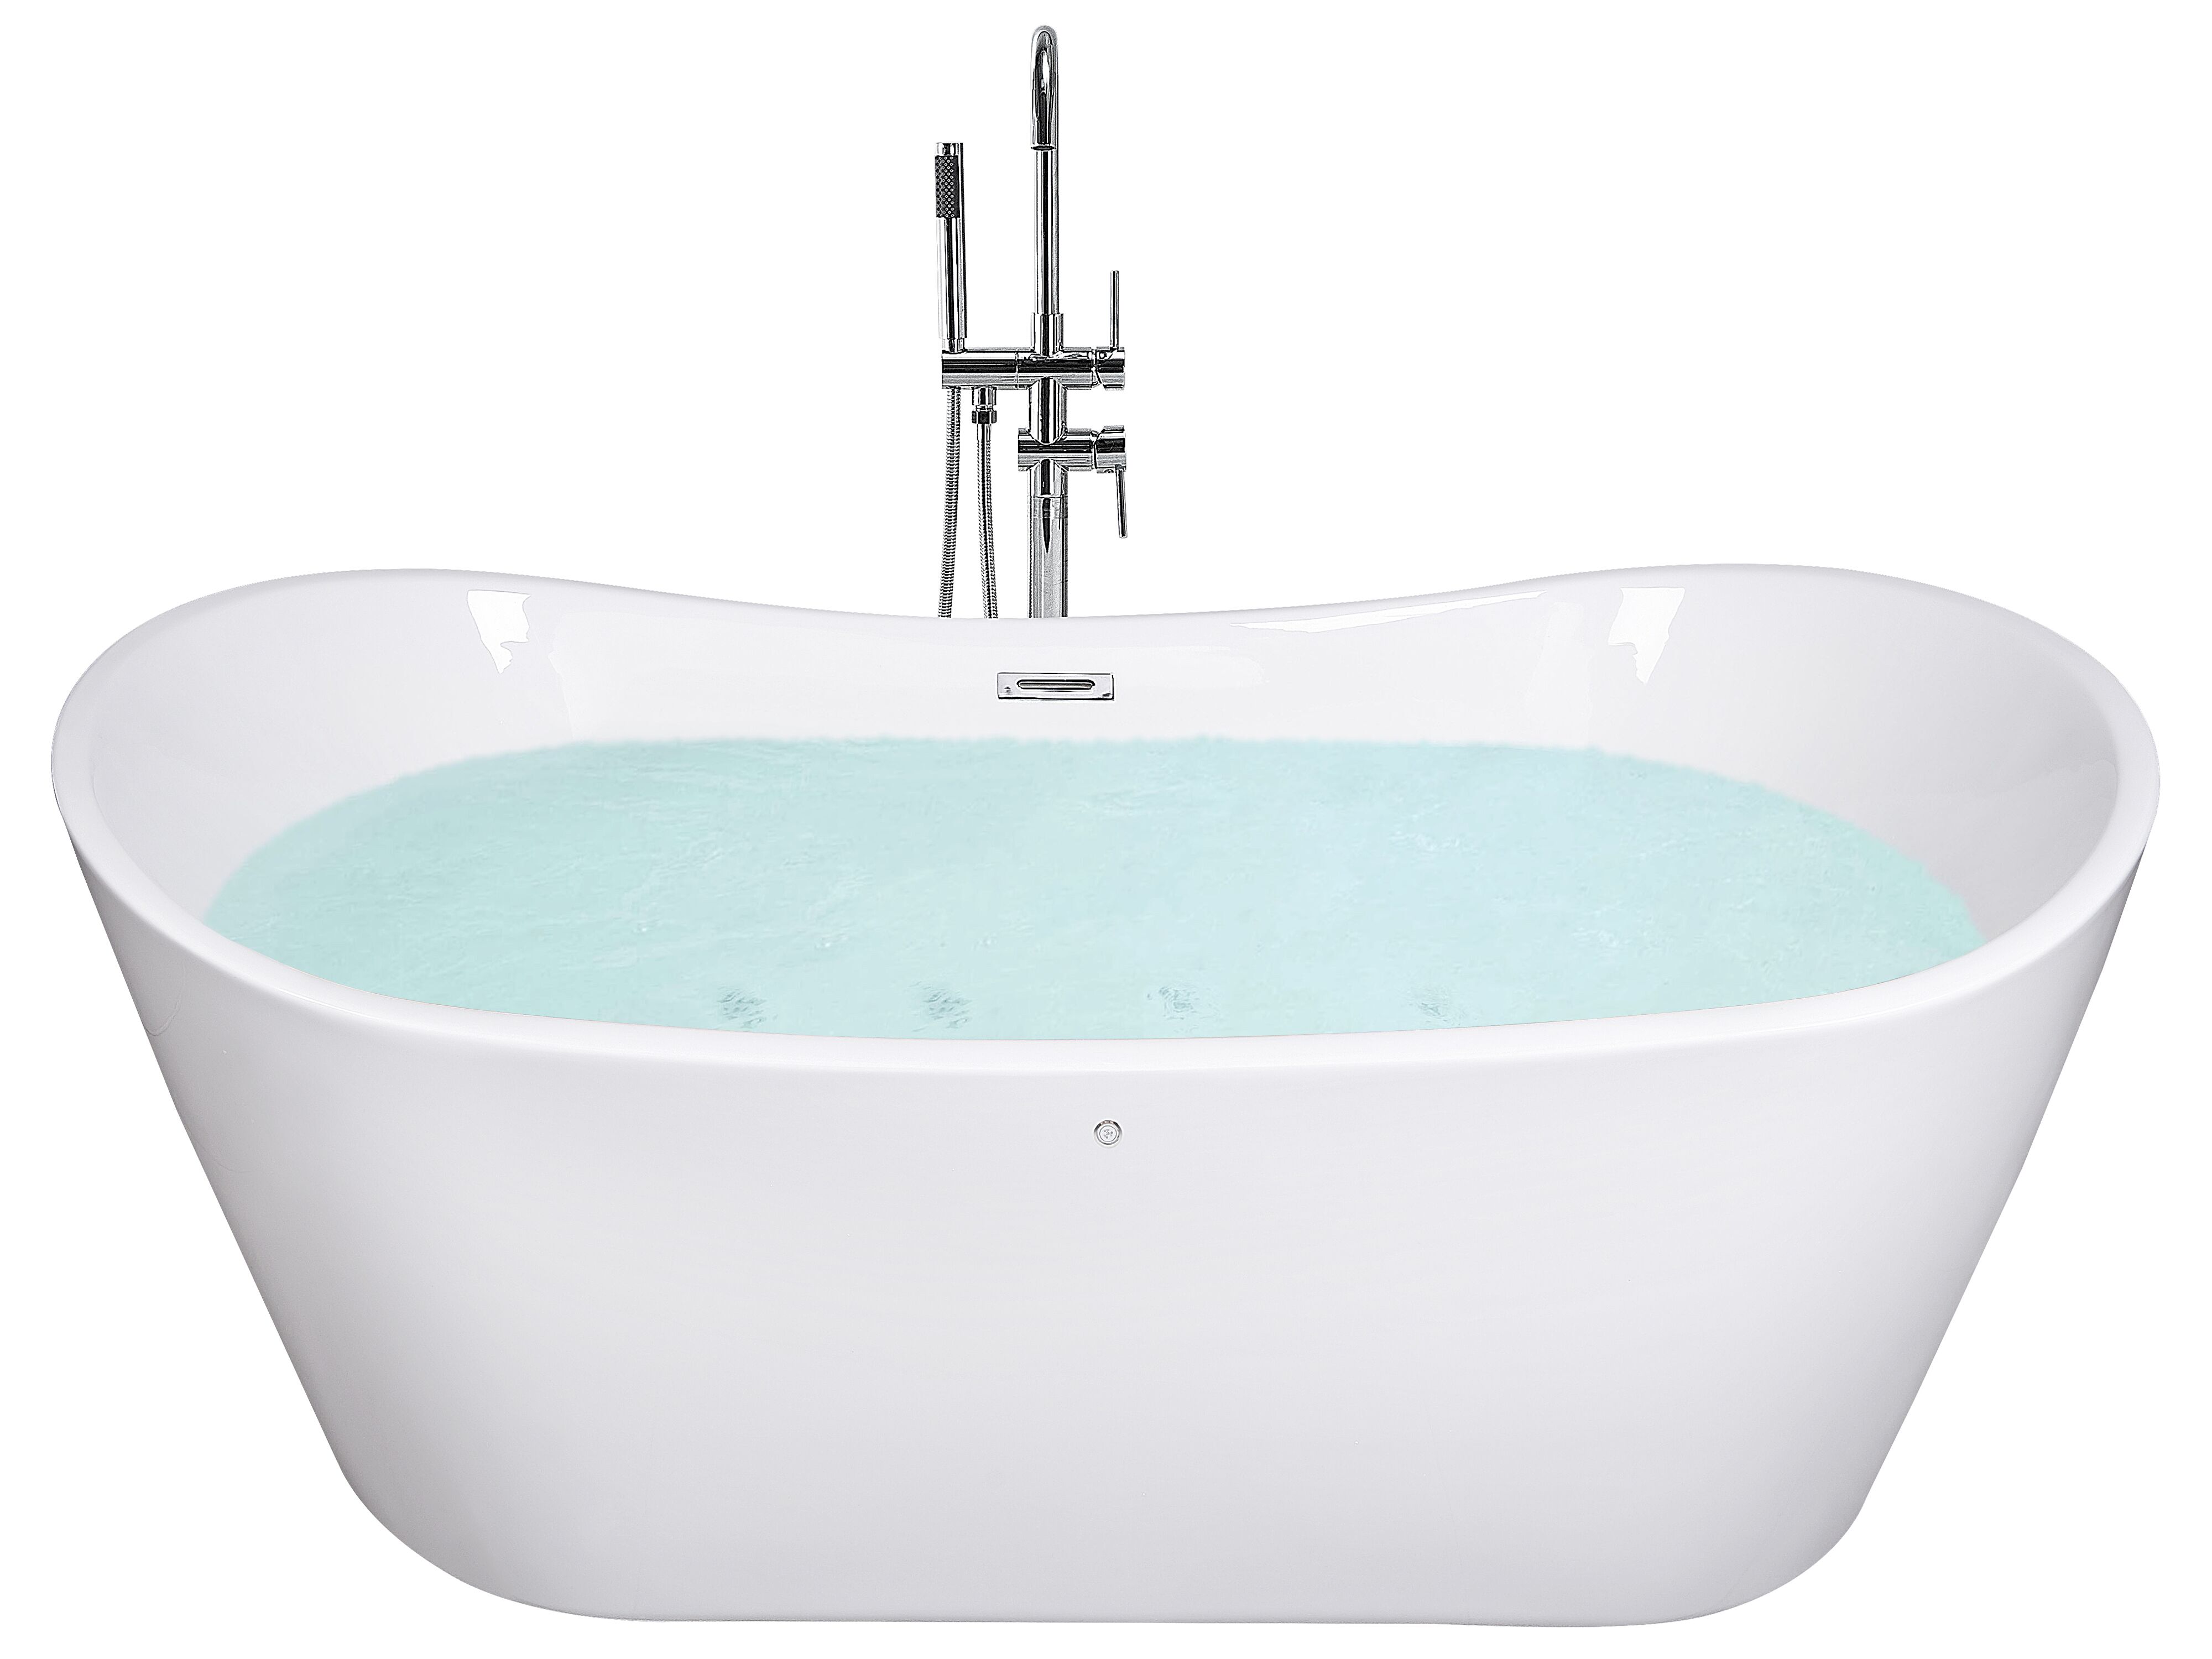 Whirlpool-badkuip vrijstaand 168 cm ANTIGUA ✓ Gratis Levering